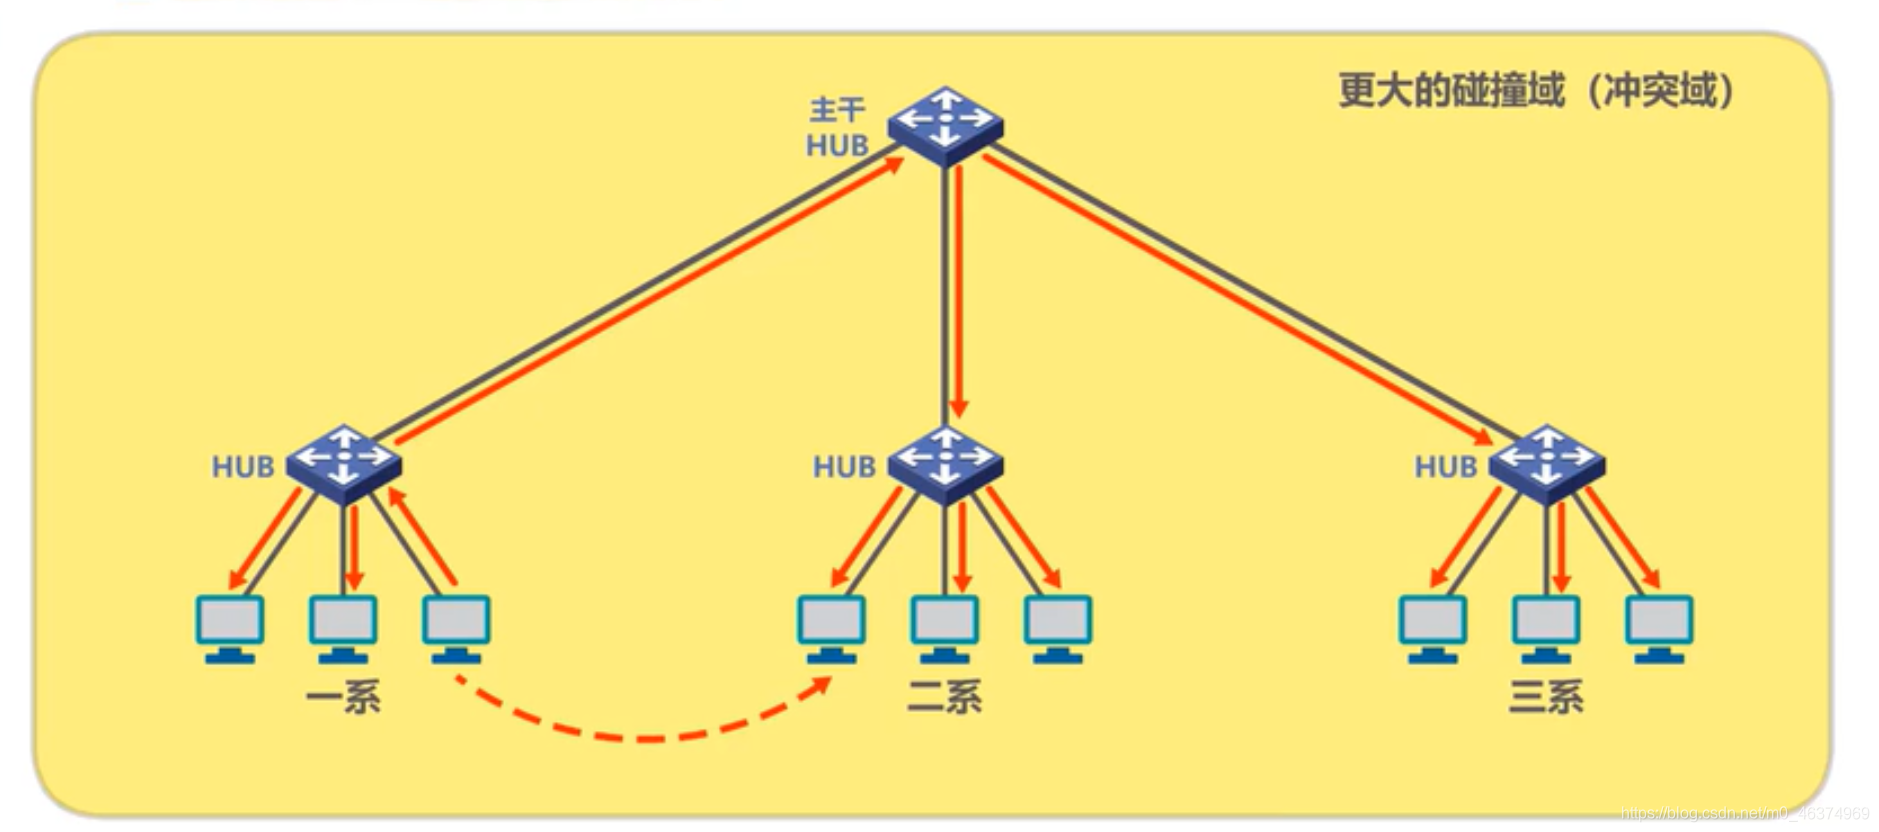 计算机网络学习（七）—集线器与交换机_以太网交换机_04